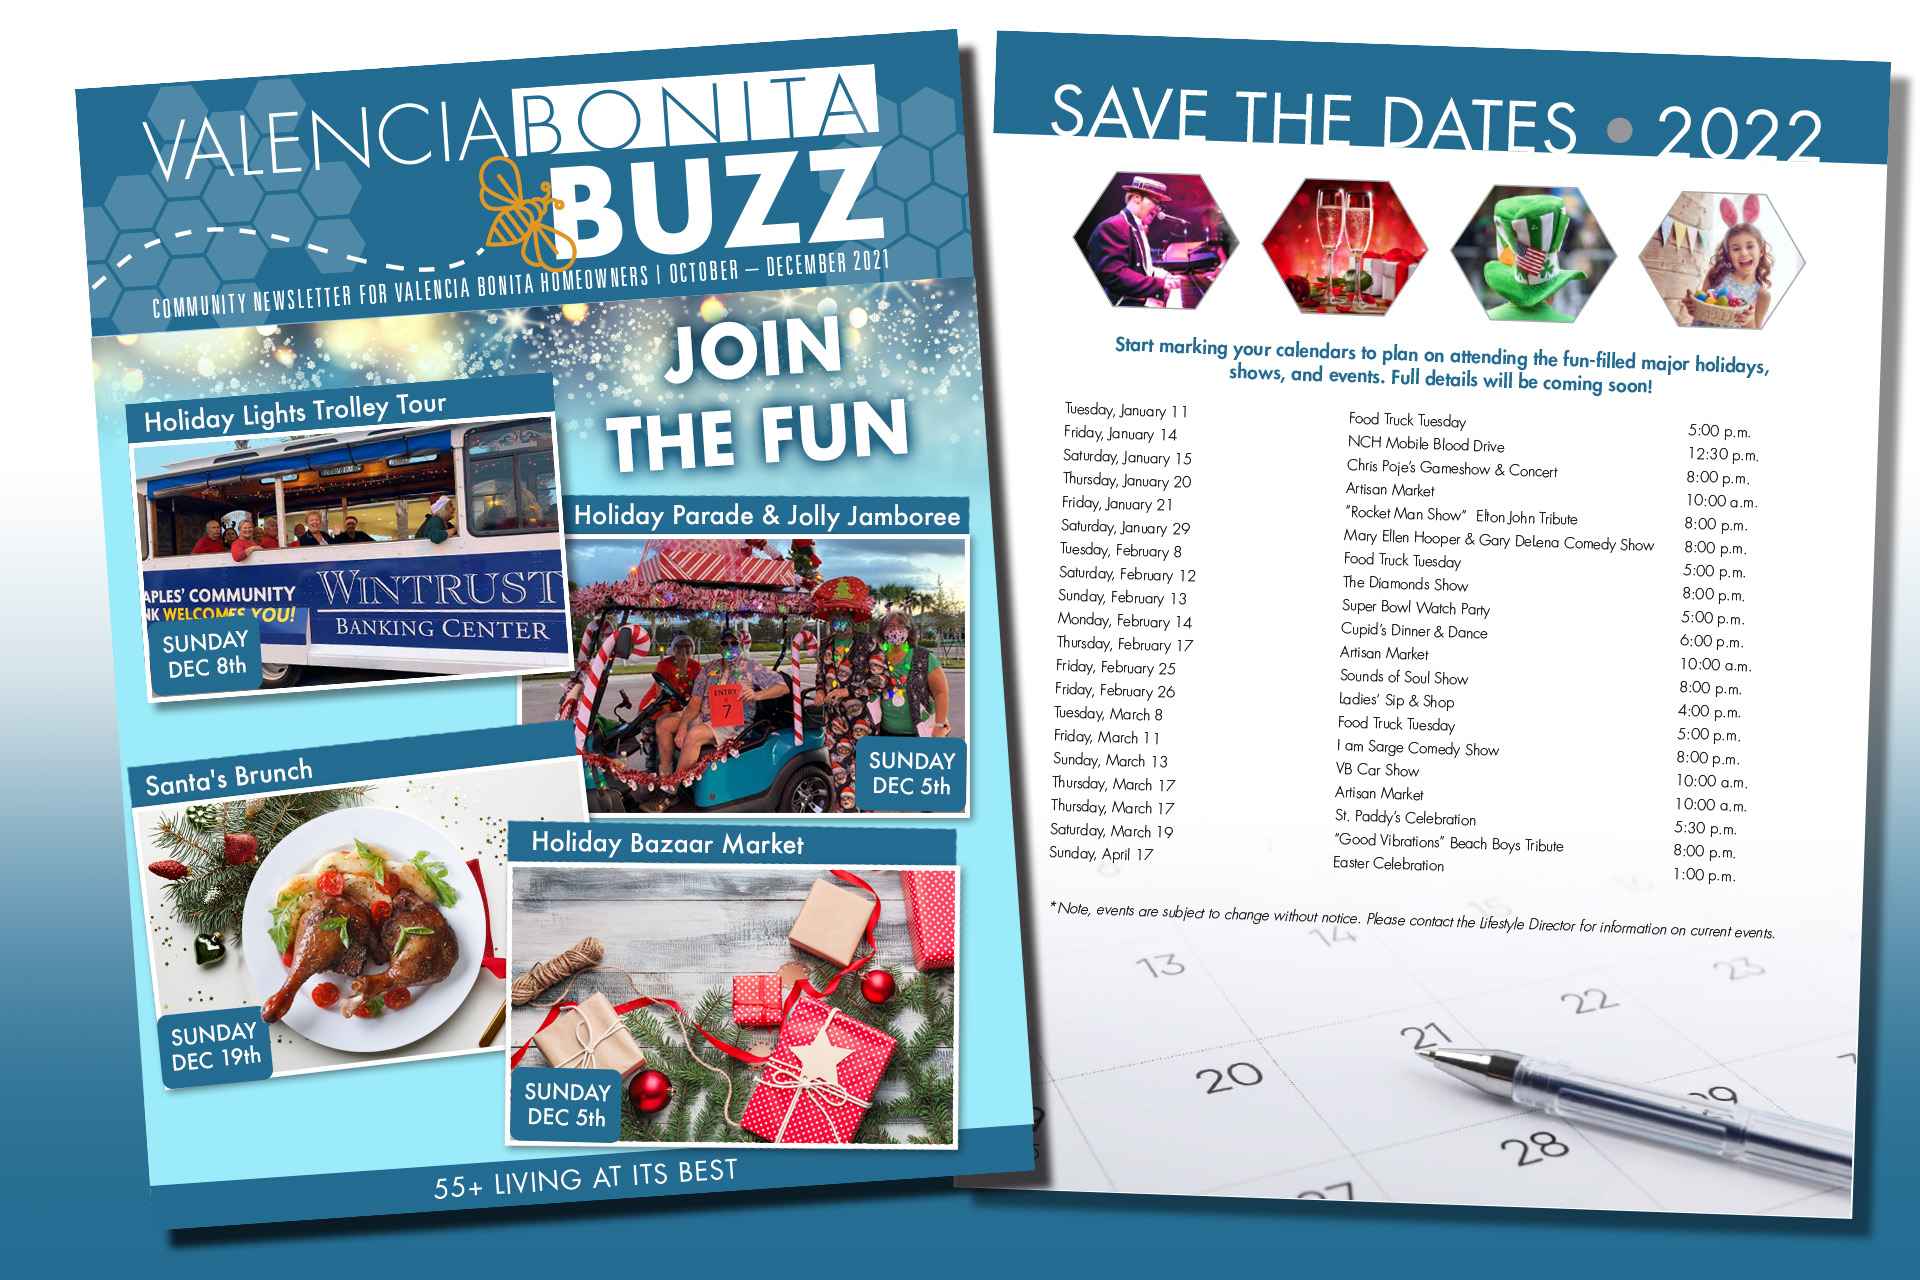 Valencia Bonita 55+ Calendar of Events Join the FUN! Florida Real